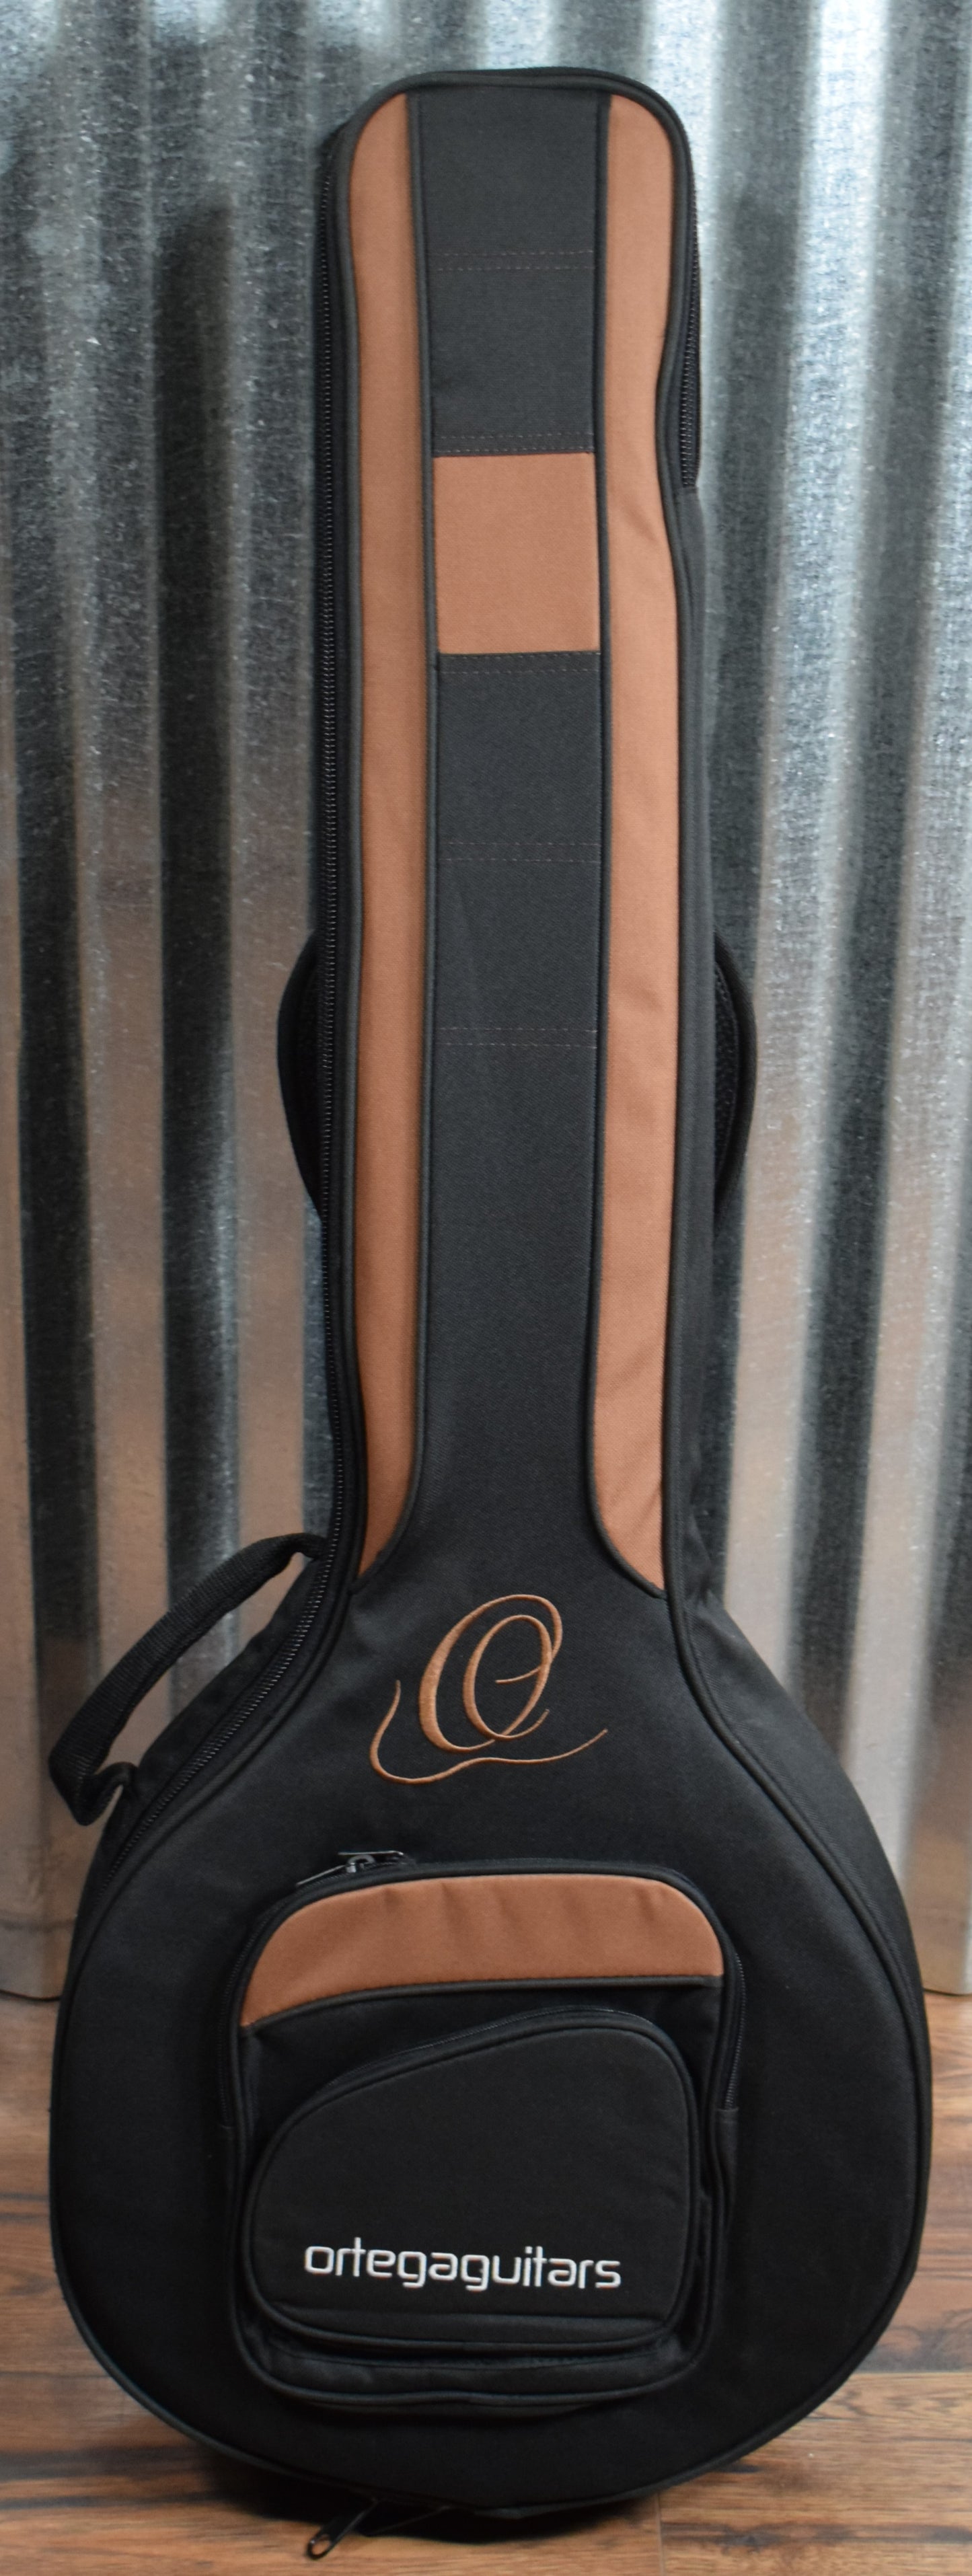 Ortega Guitars Falcon OBJ750-MA Flame Maple 5 String Banjo & Bag #0021 B Stock